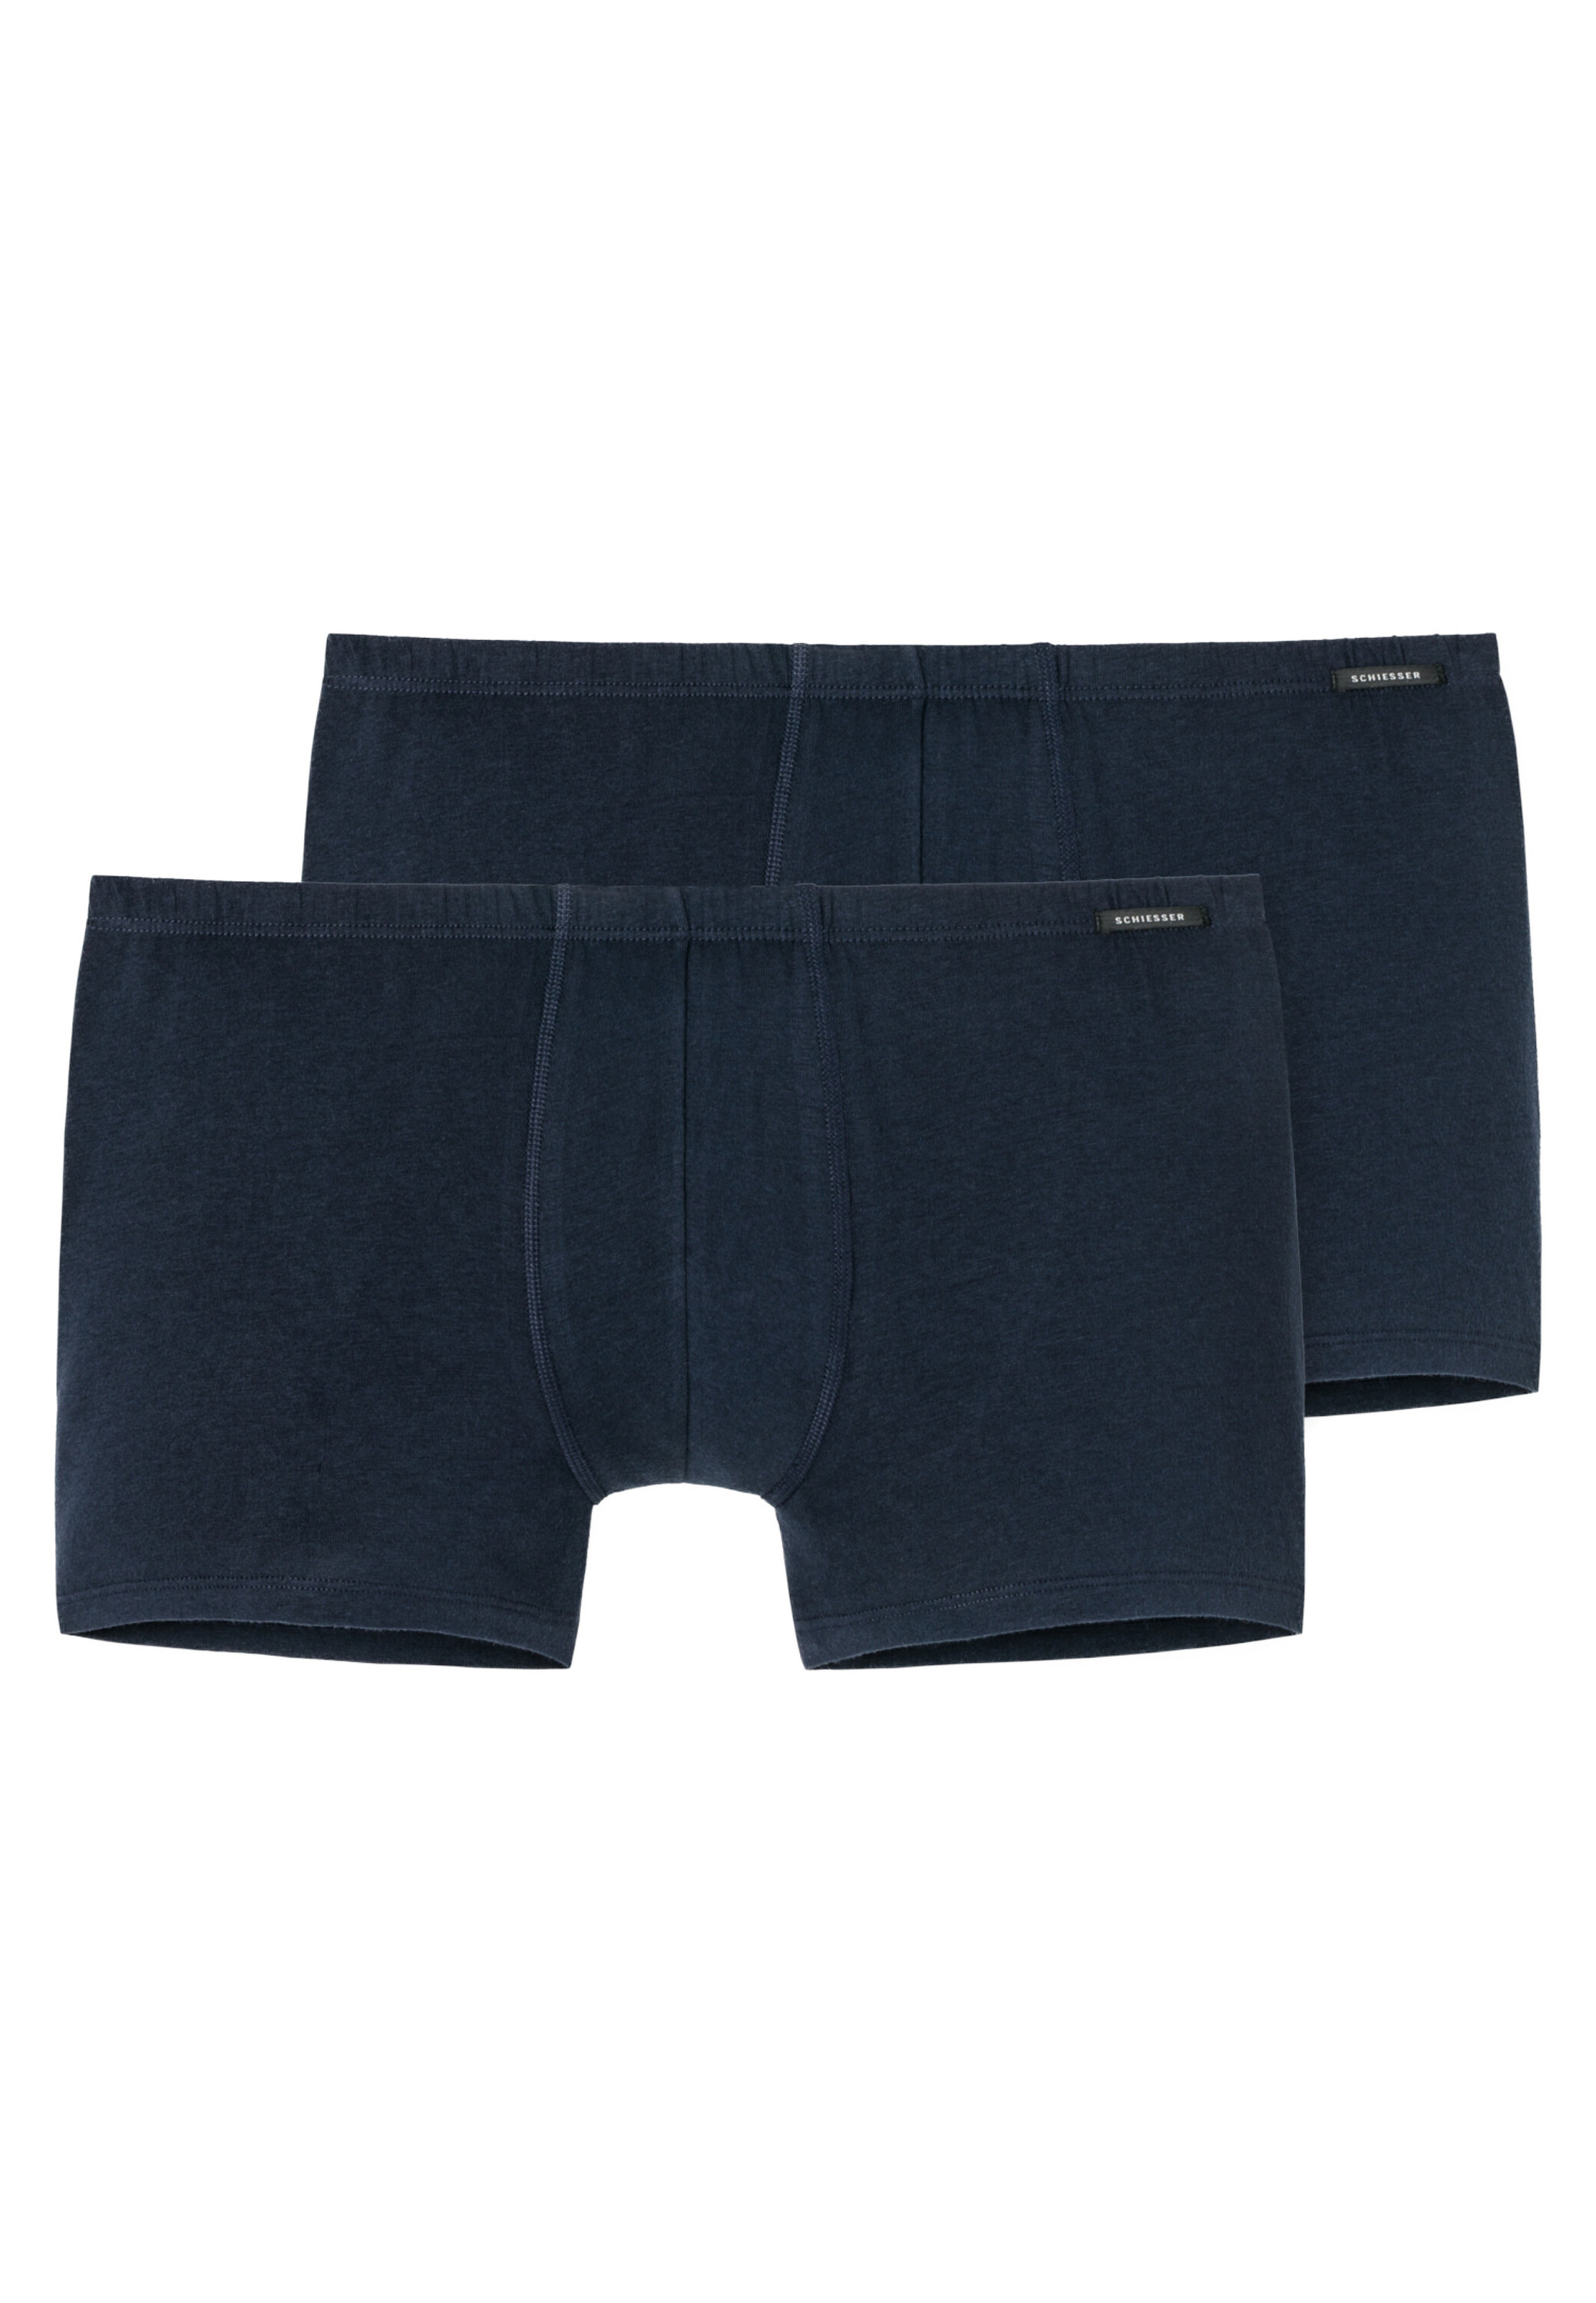 Трусы Schiesser Shorts Cotton Essentials, темно синий